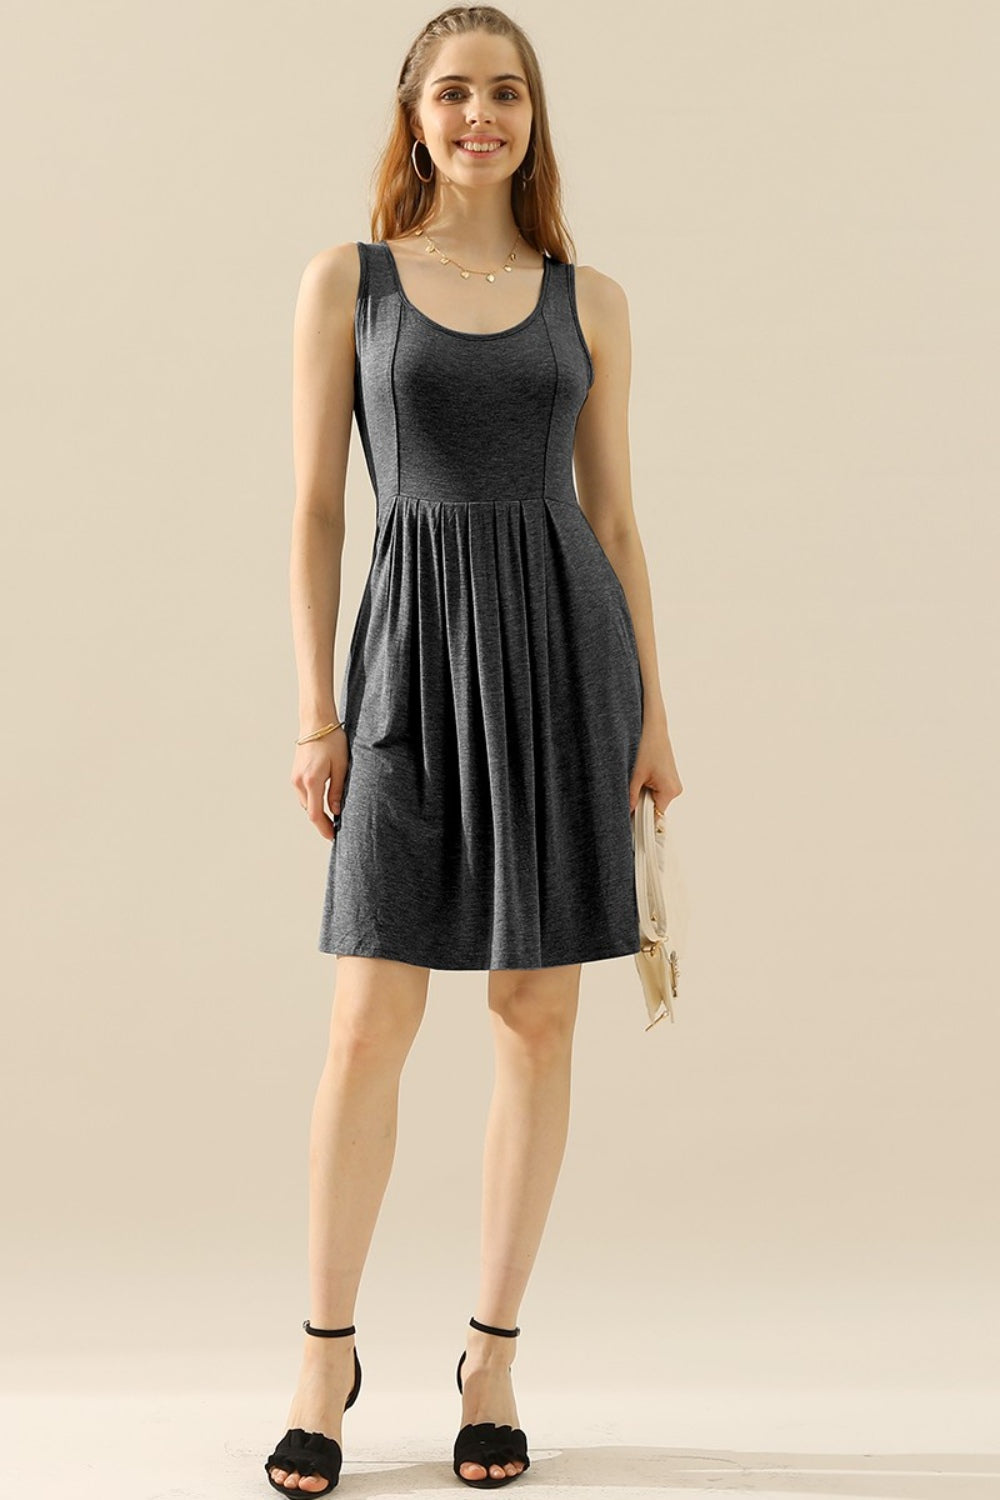 Doublju – Ärmelloses Kleid in voller Größe mit Rundhalsausschnitt, Rüschen und Taschen